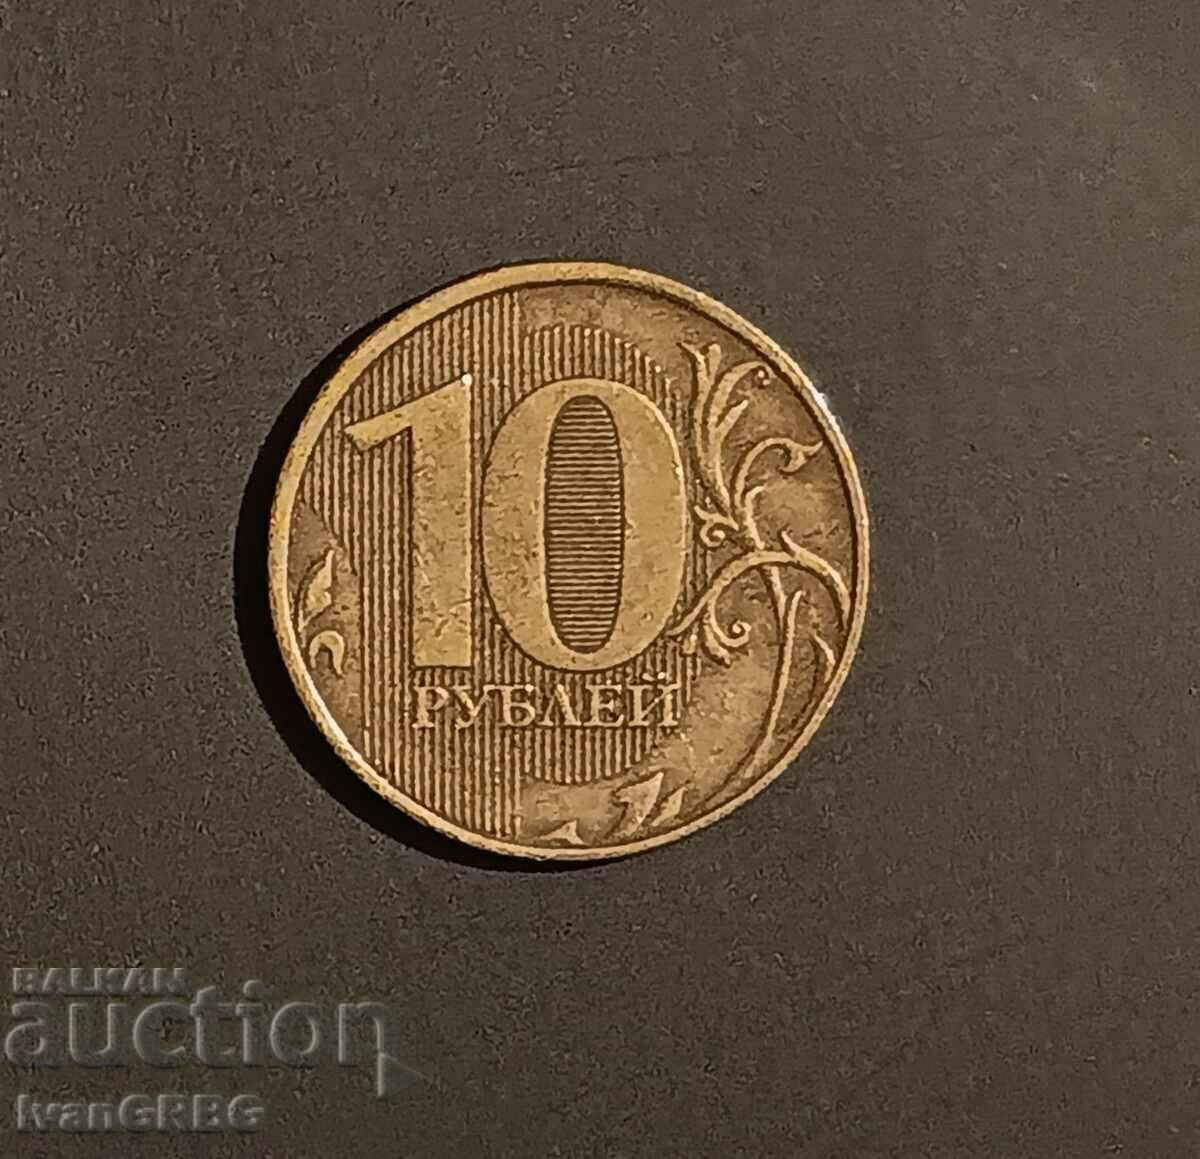 Ρωσικό νόμισμα 10 ρούβλια Ρωσία 2012